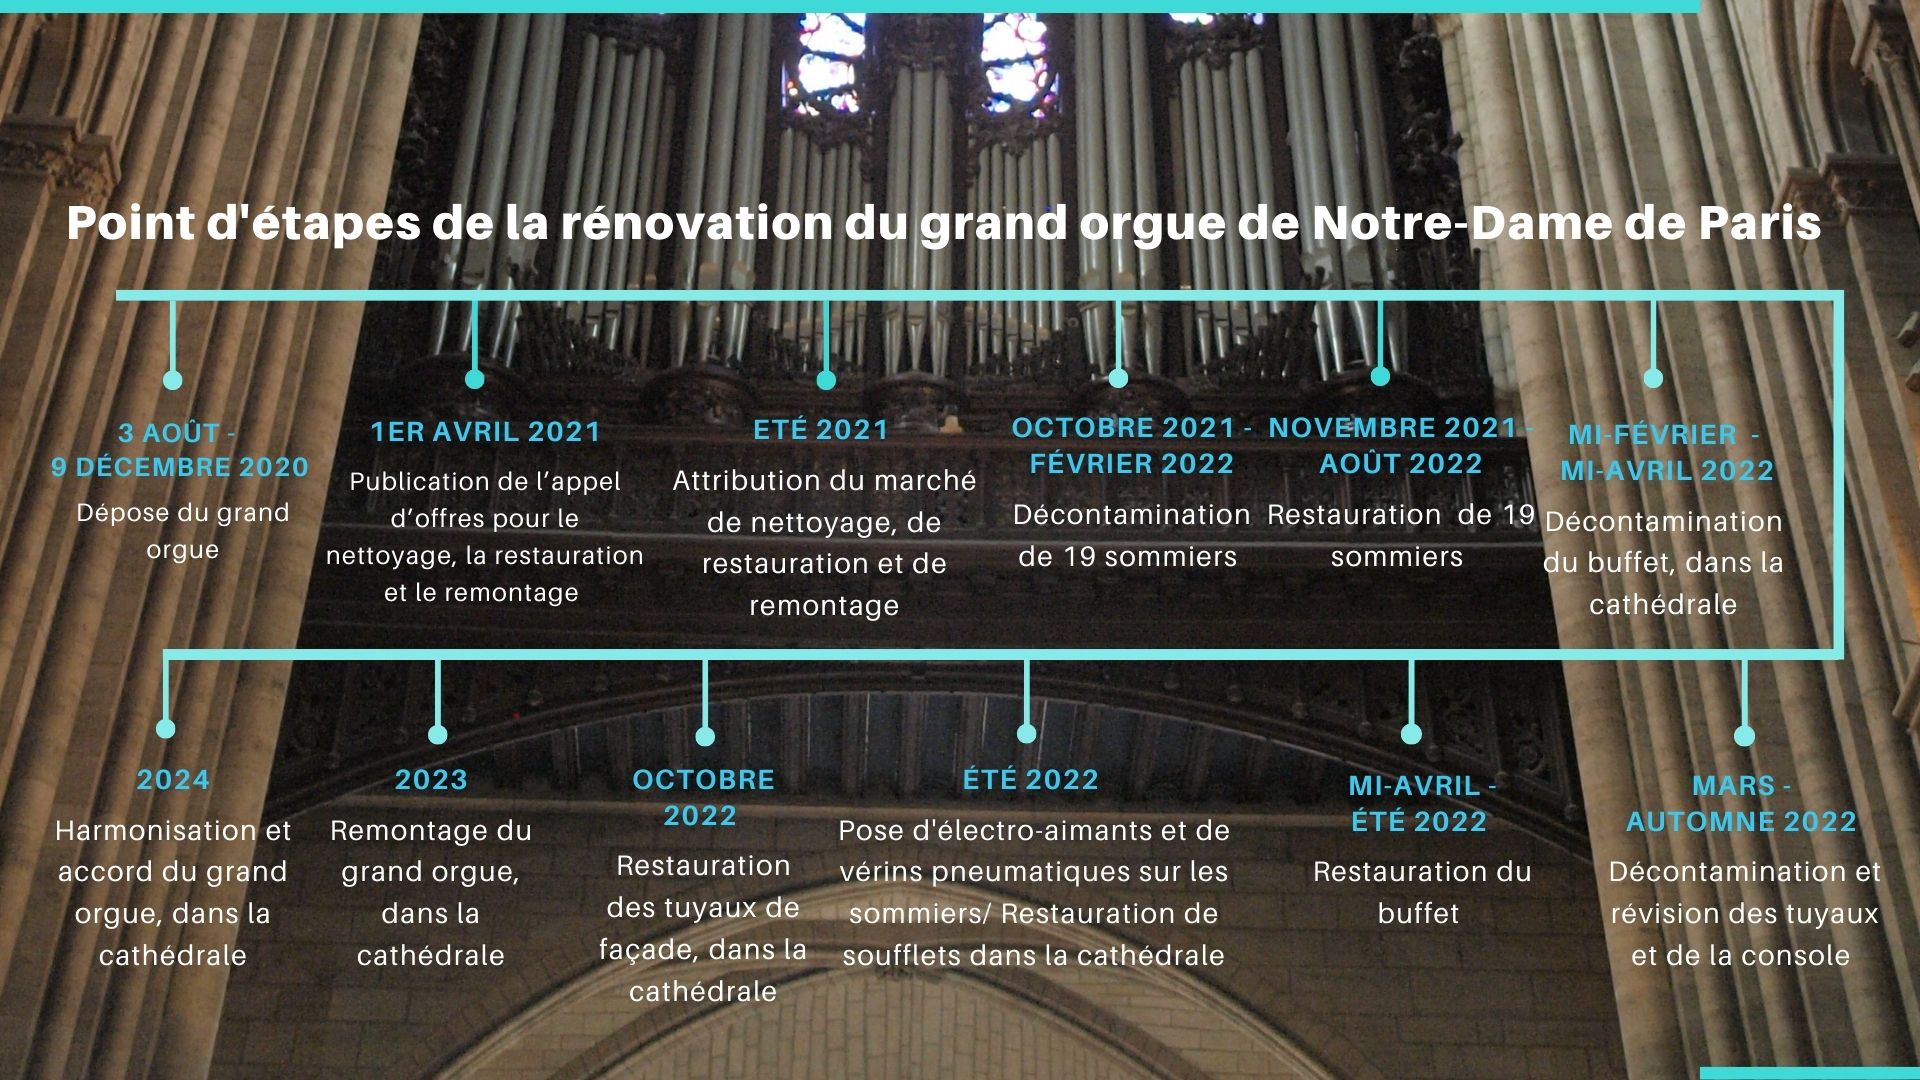 Point d'étapes de la restauration du grand orgue de Notre Dame de Paris